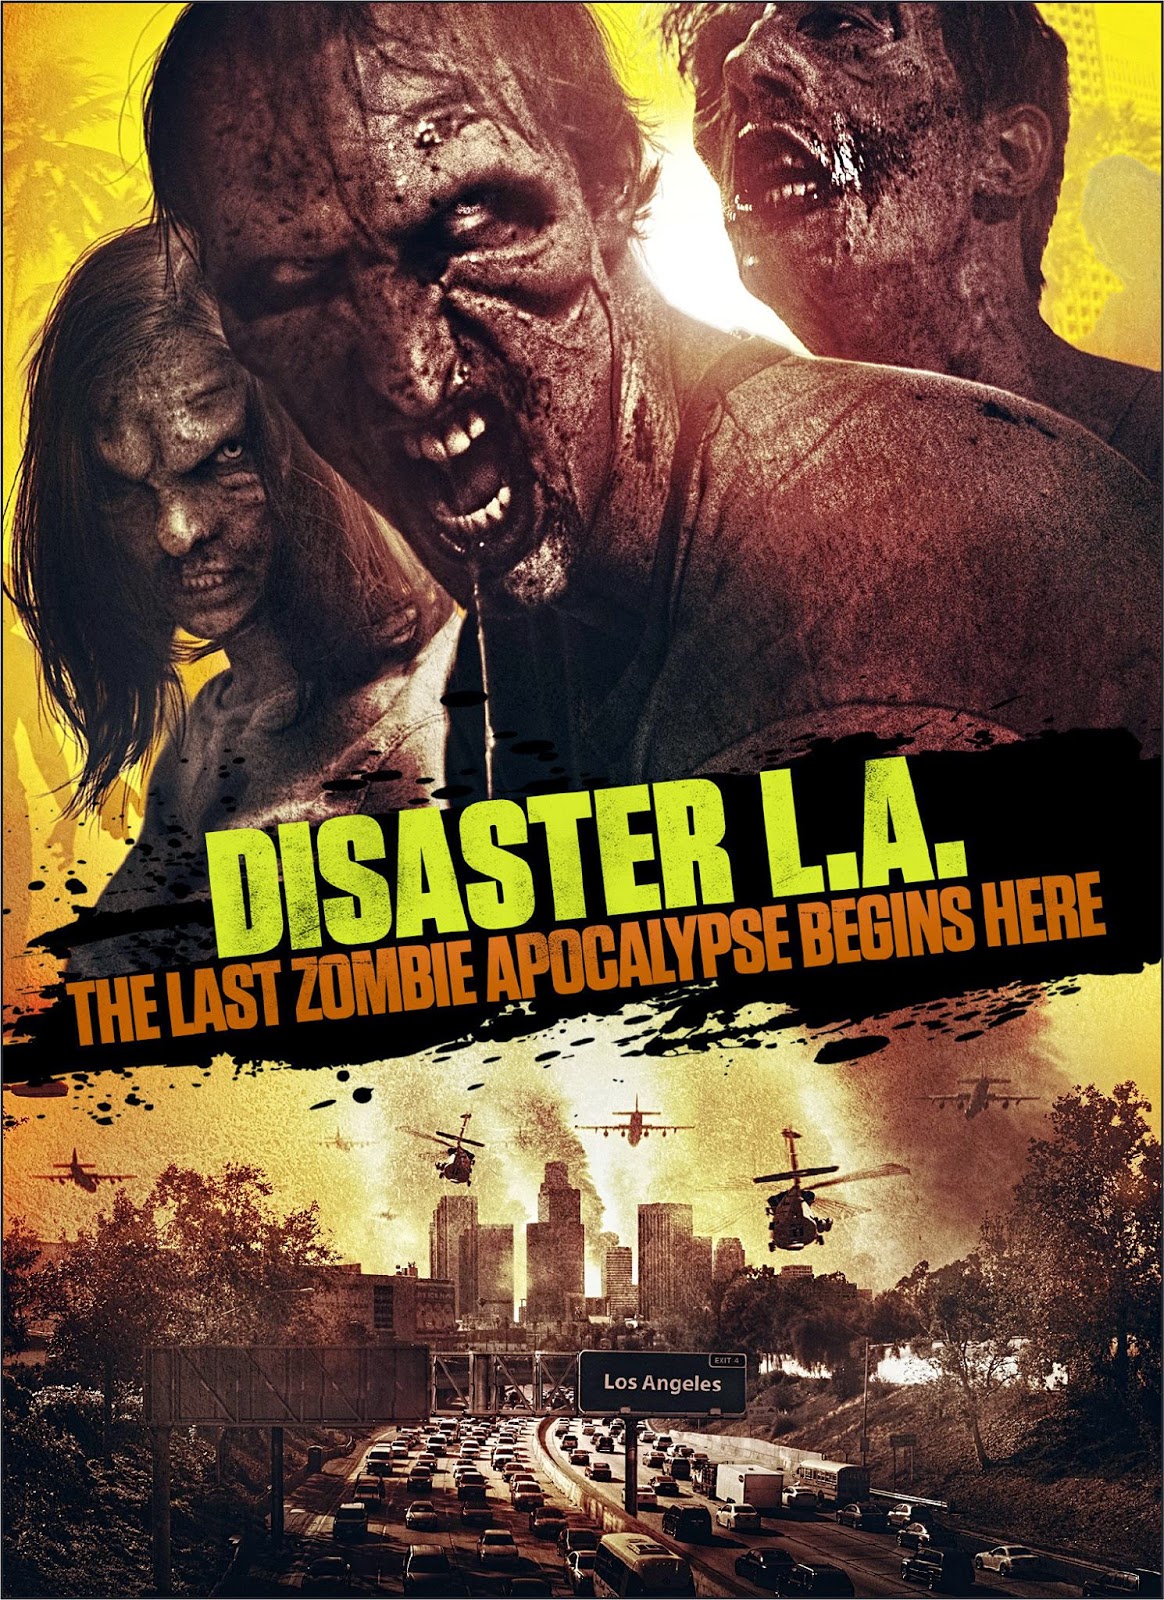 La Zombie Apocalypse the Last Disaster